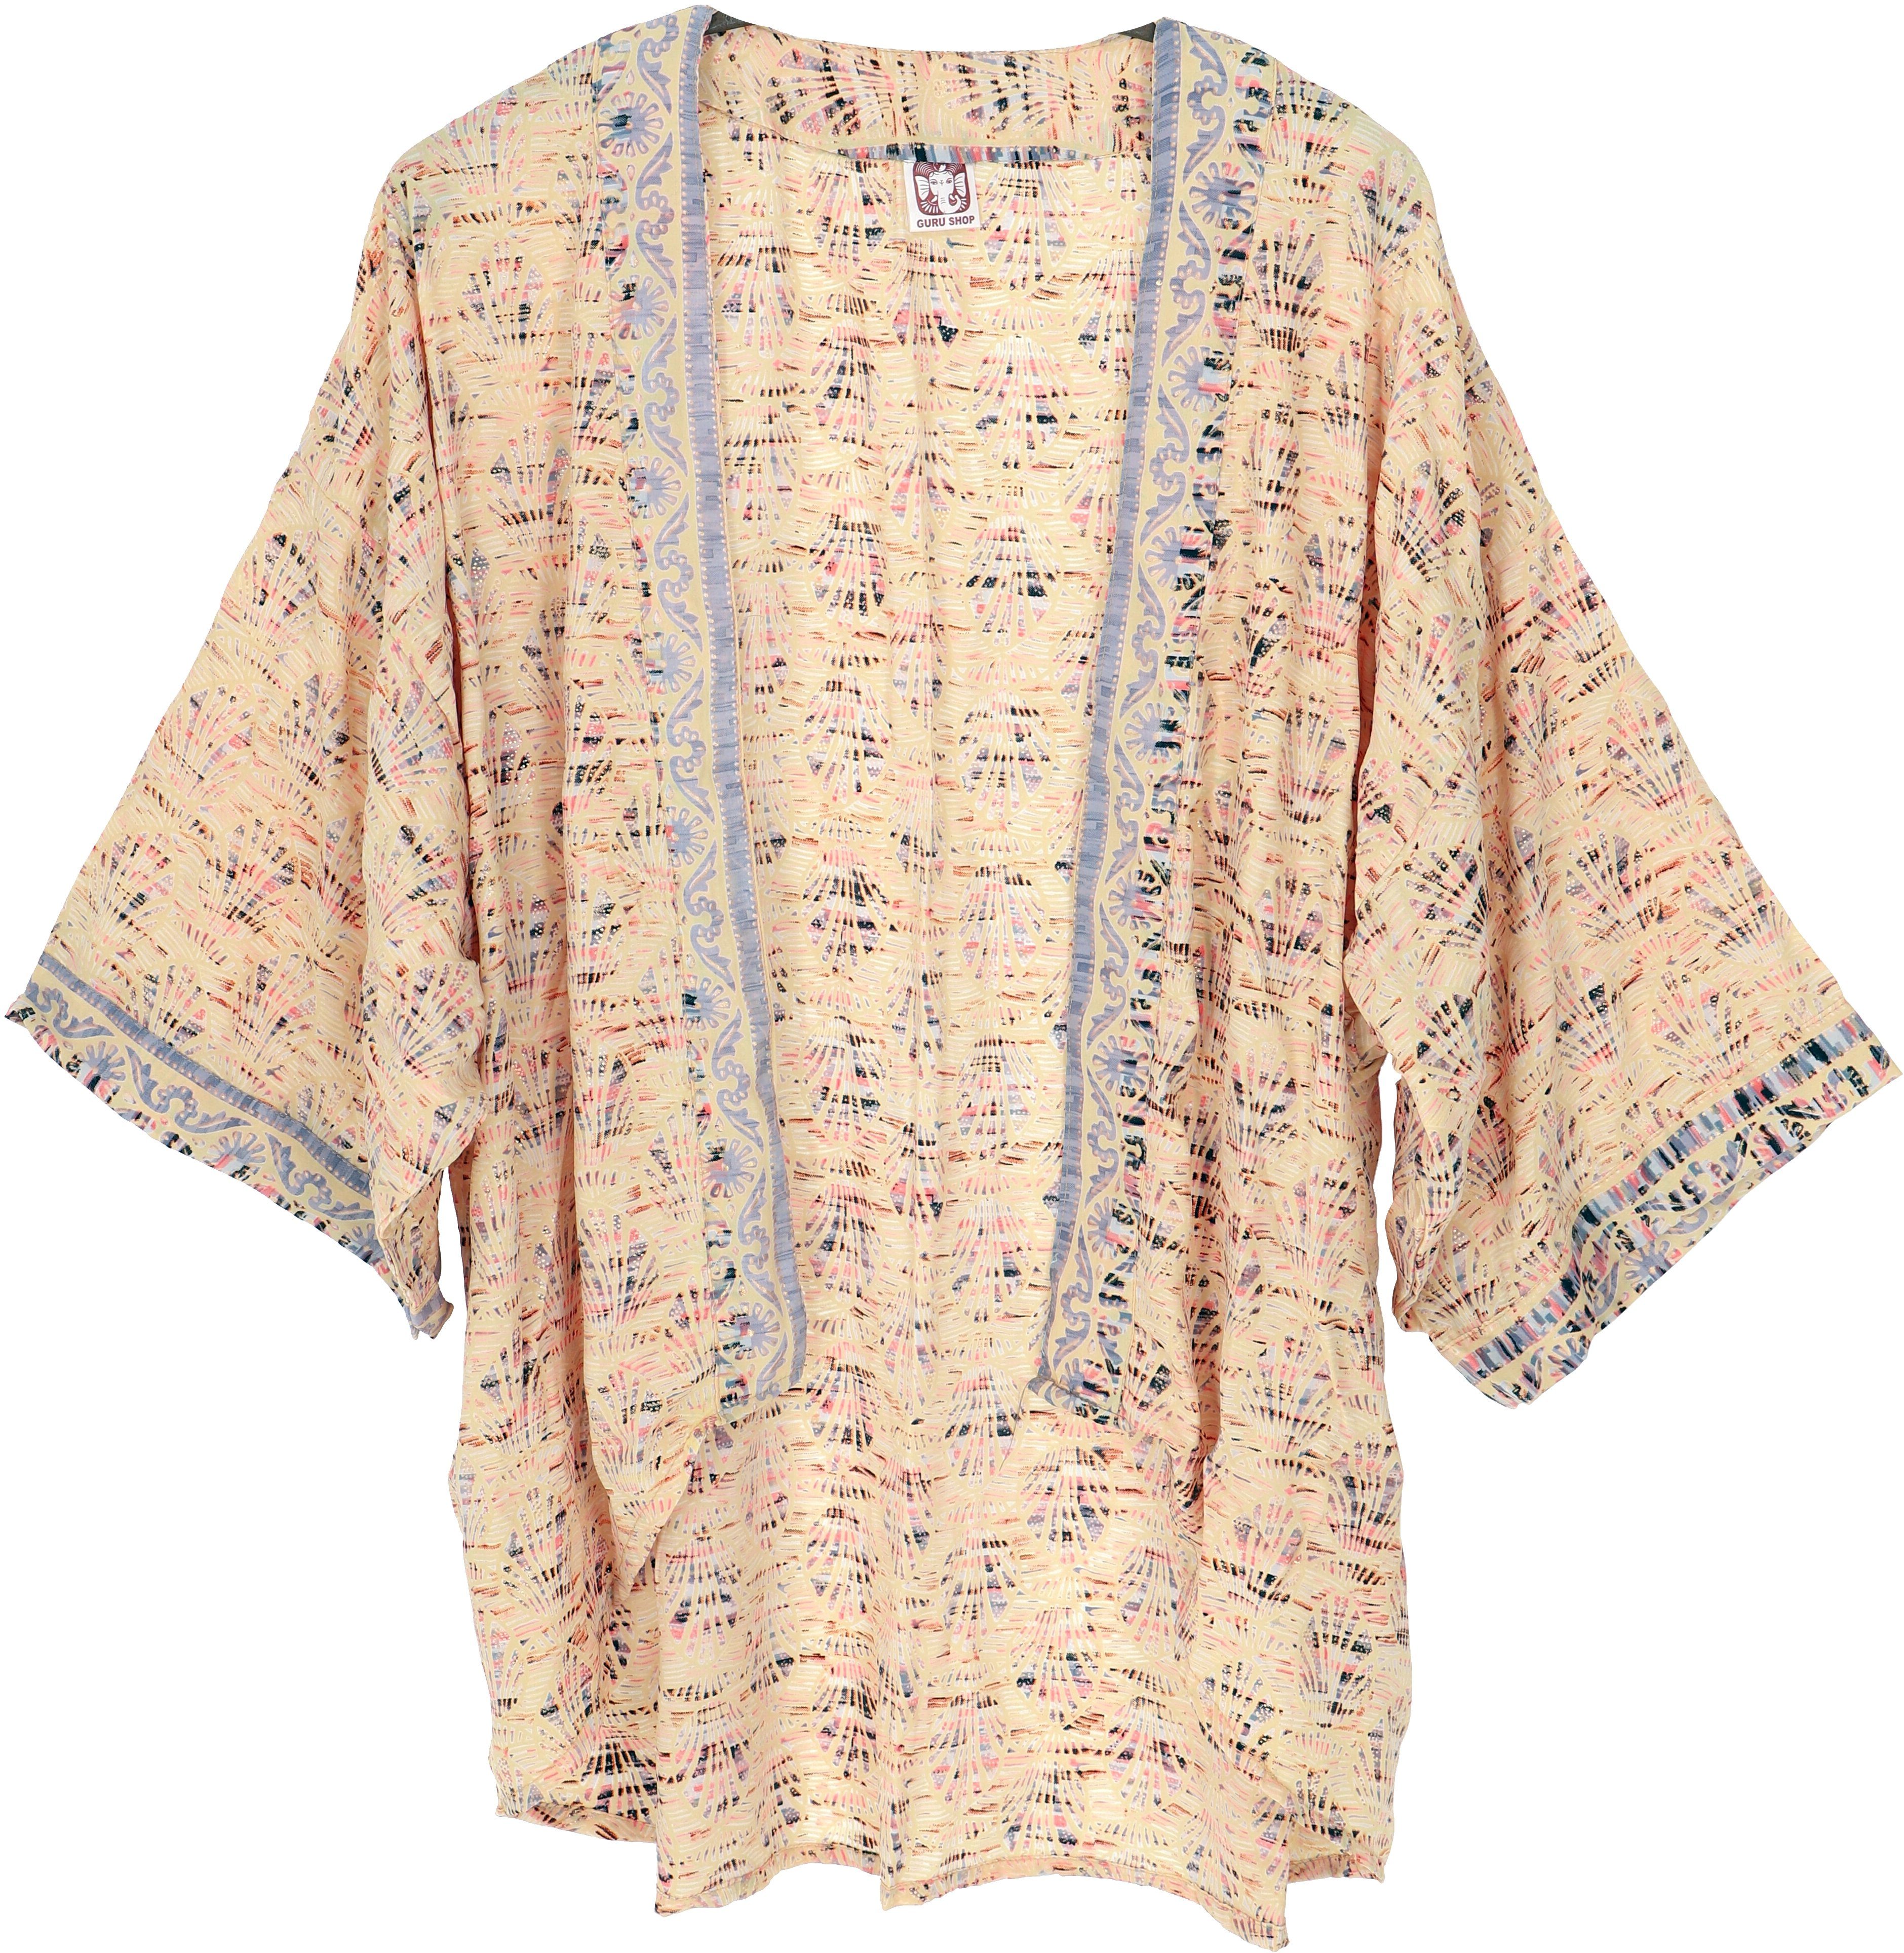 Guru-Shop Kimono Kurzer Kimono, Boho Kimono, offener Kimono -.., alternative Bekleidung vanille